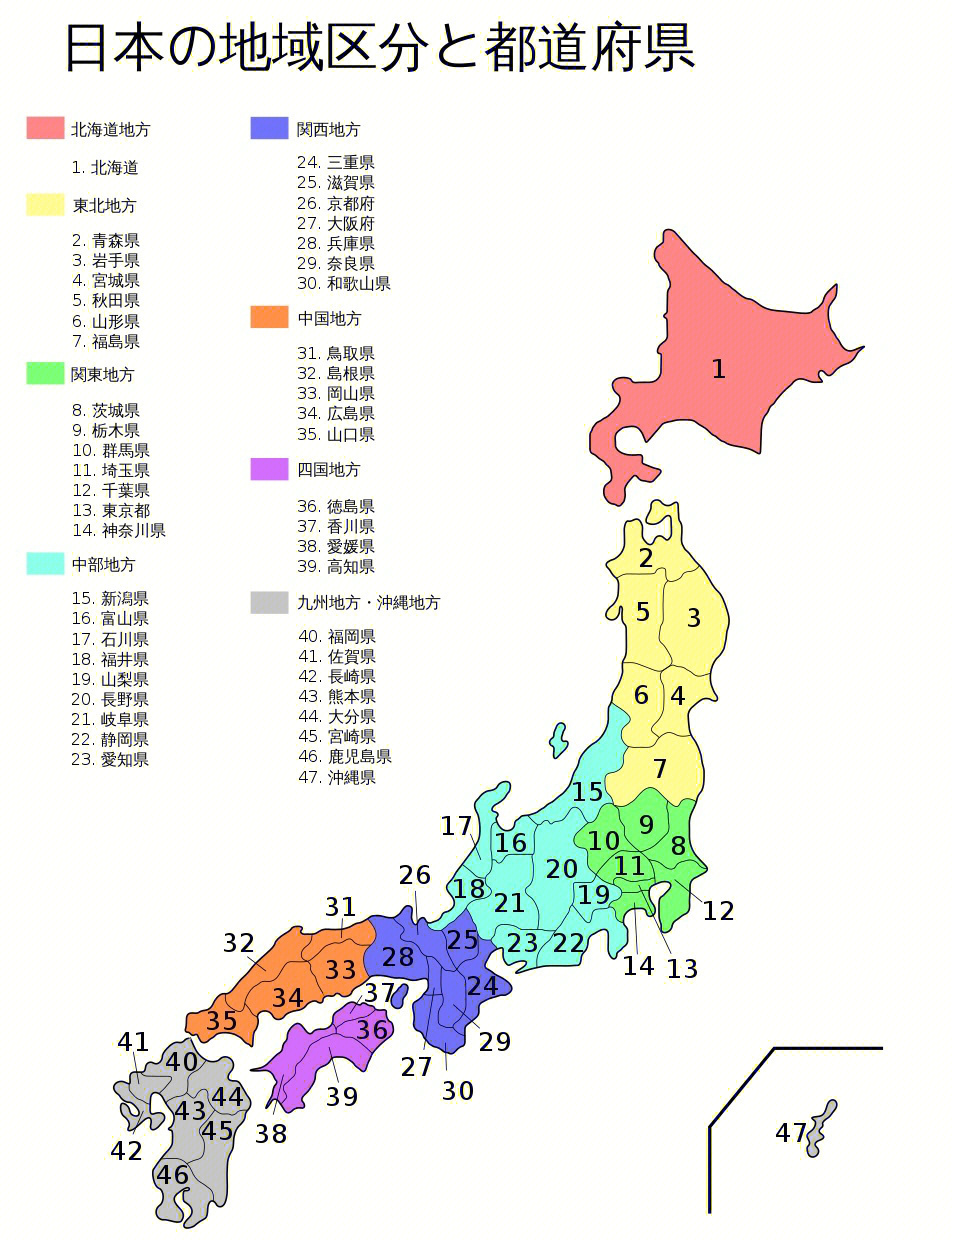 98日本一共有47个行政区划:1都(东京都),1道(北海道),2府(大阪府